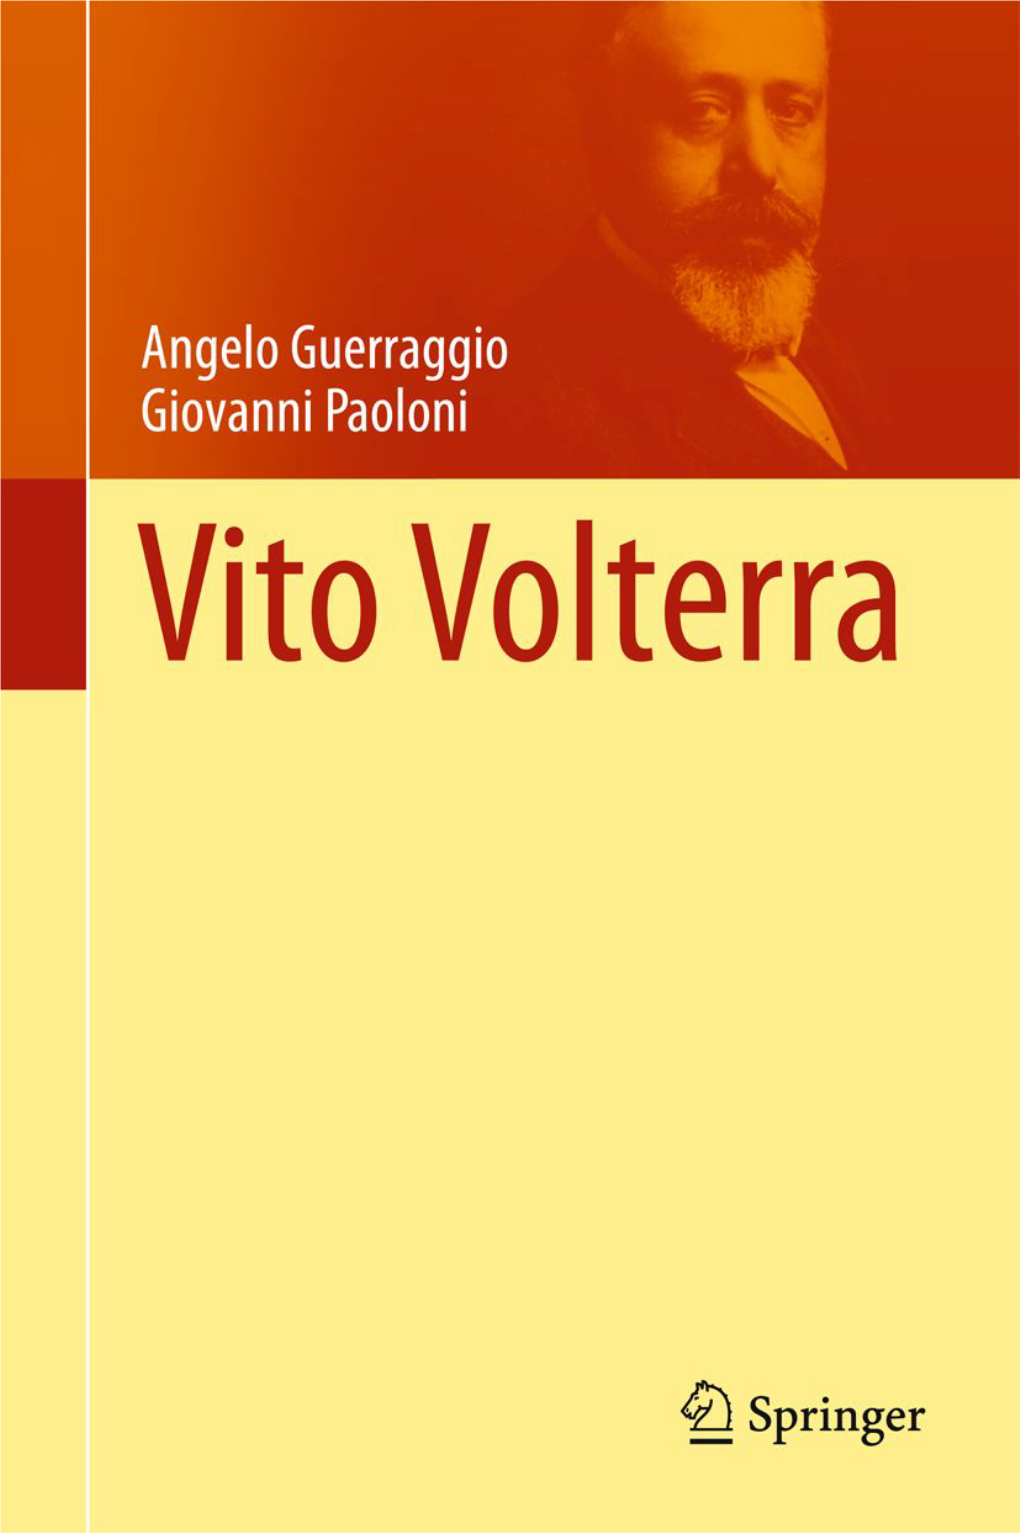 Guerraggio A., Paoloni G. Vito Volterra (Springer, 2013)(ISBN